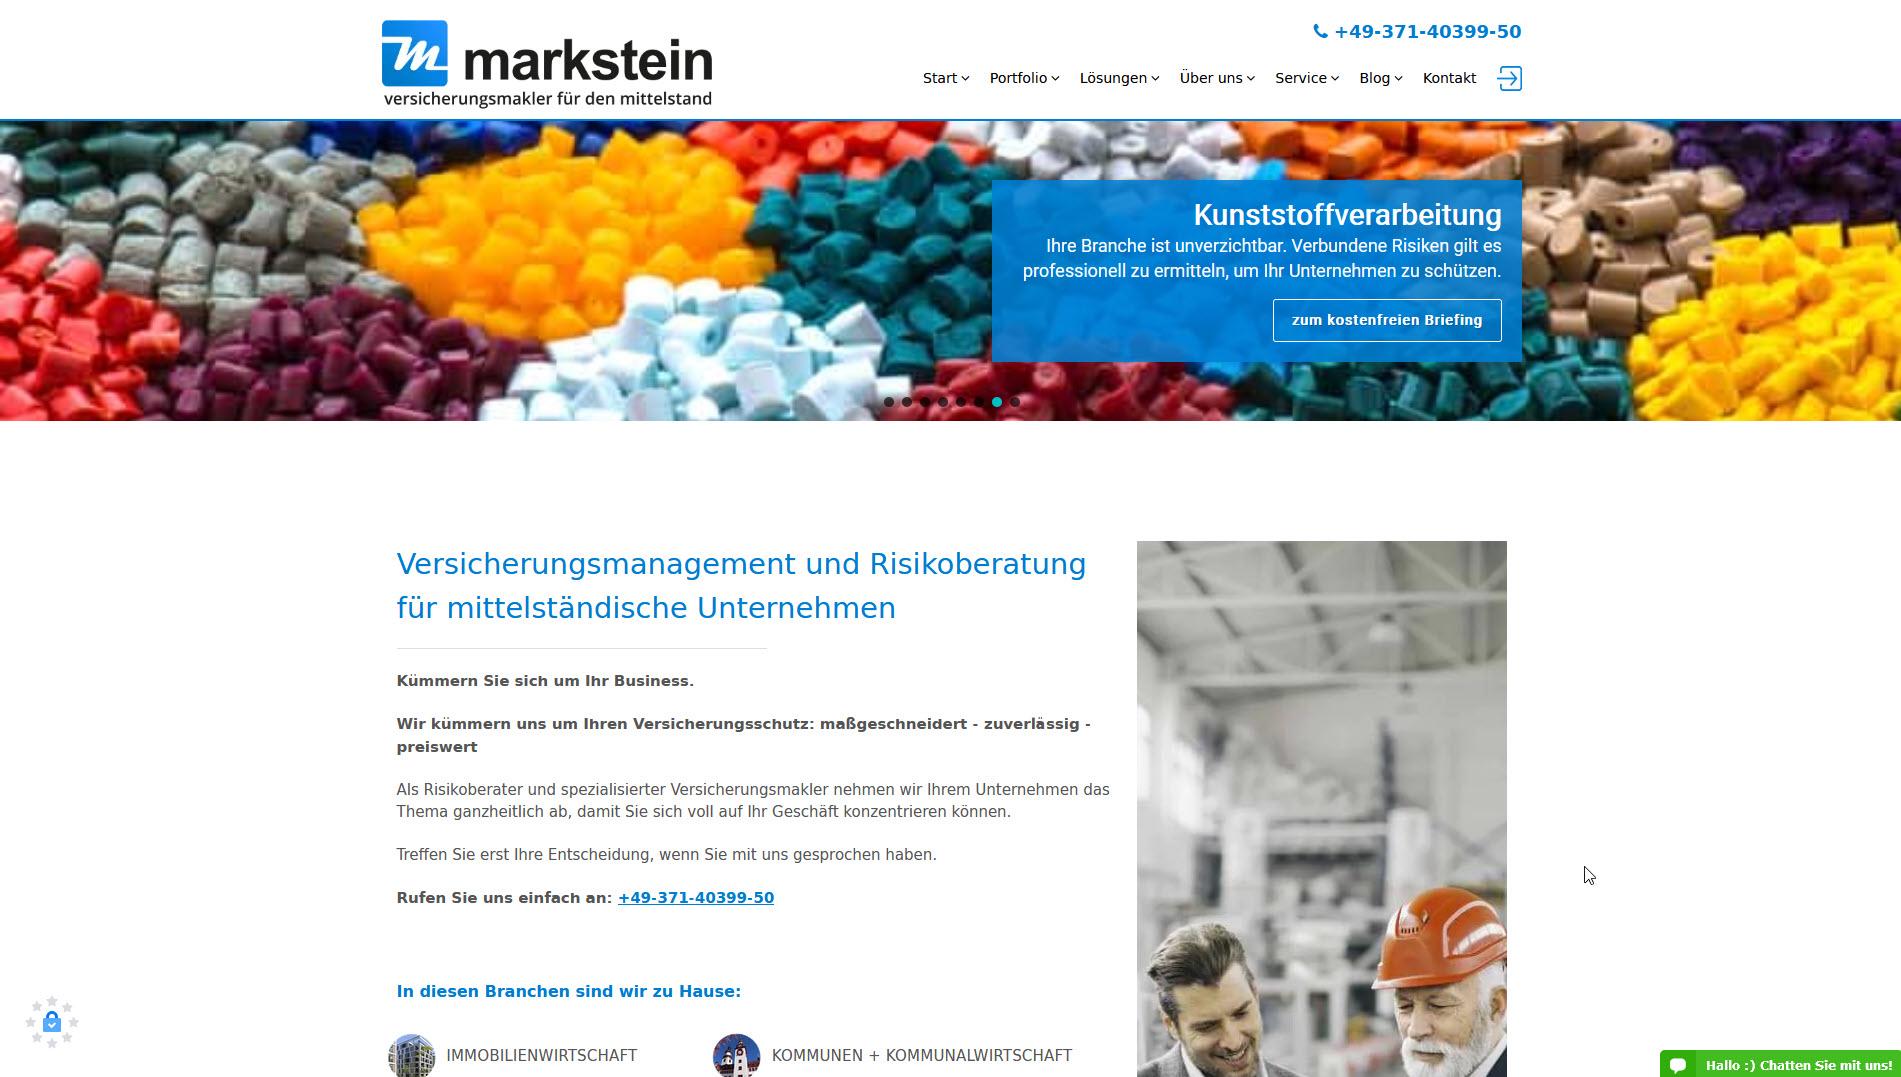 markstein – versicherungsmakler für den mittelstand, Chemnitz